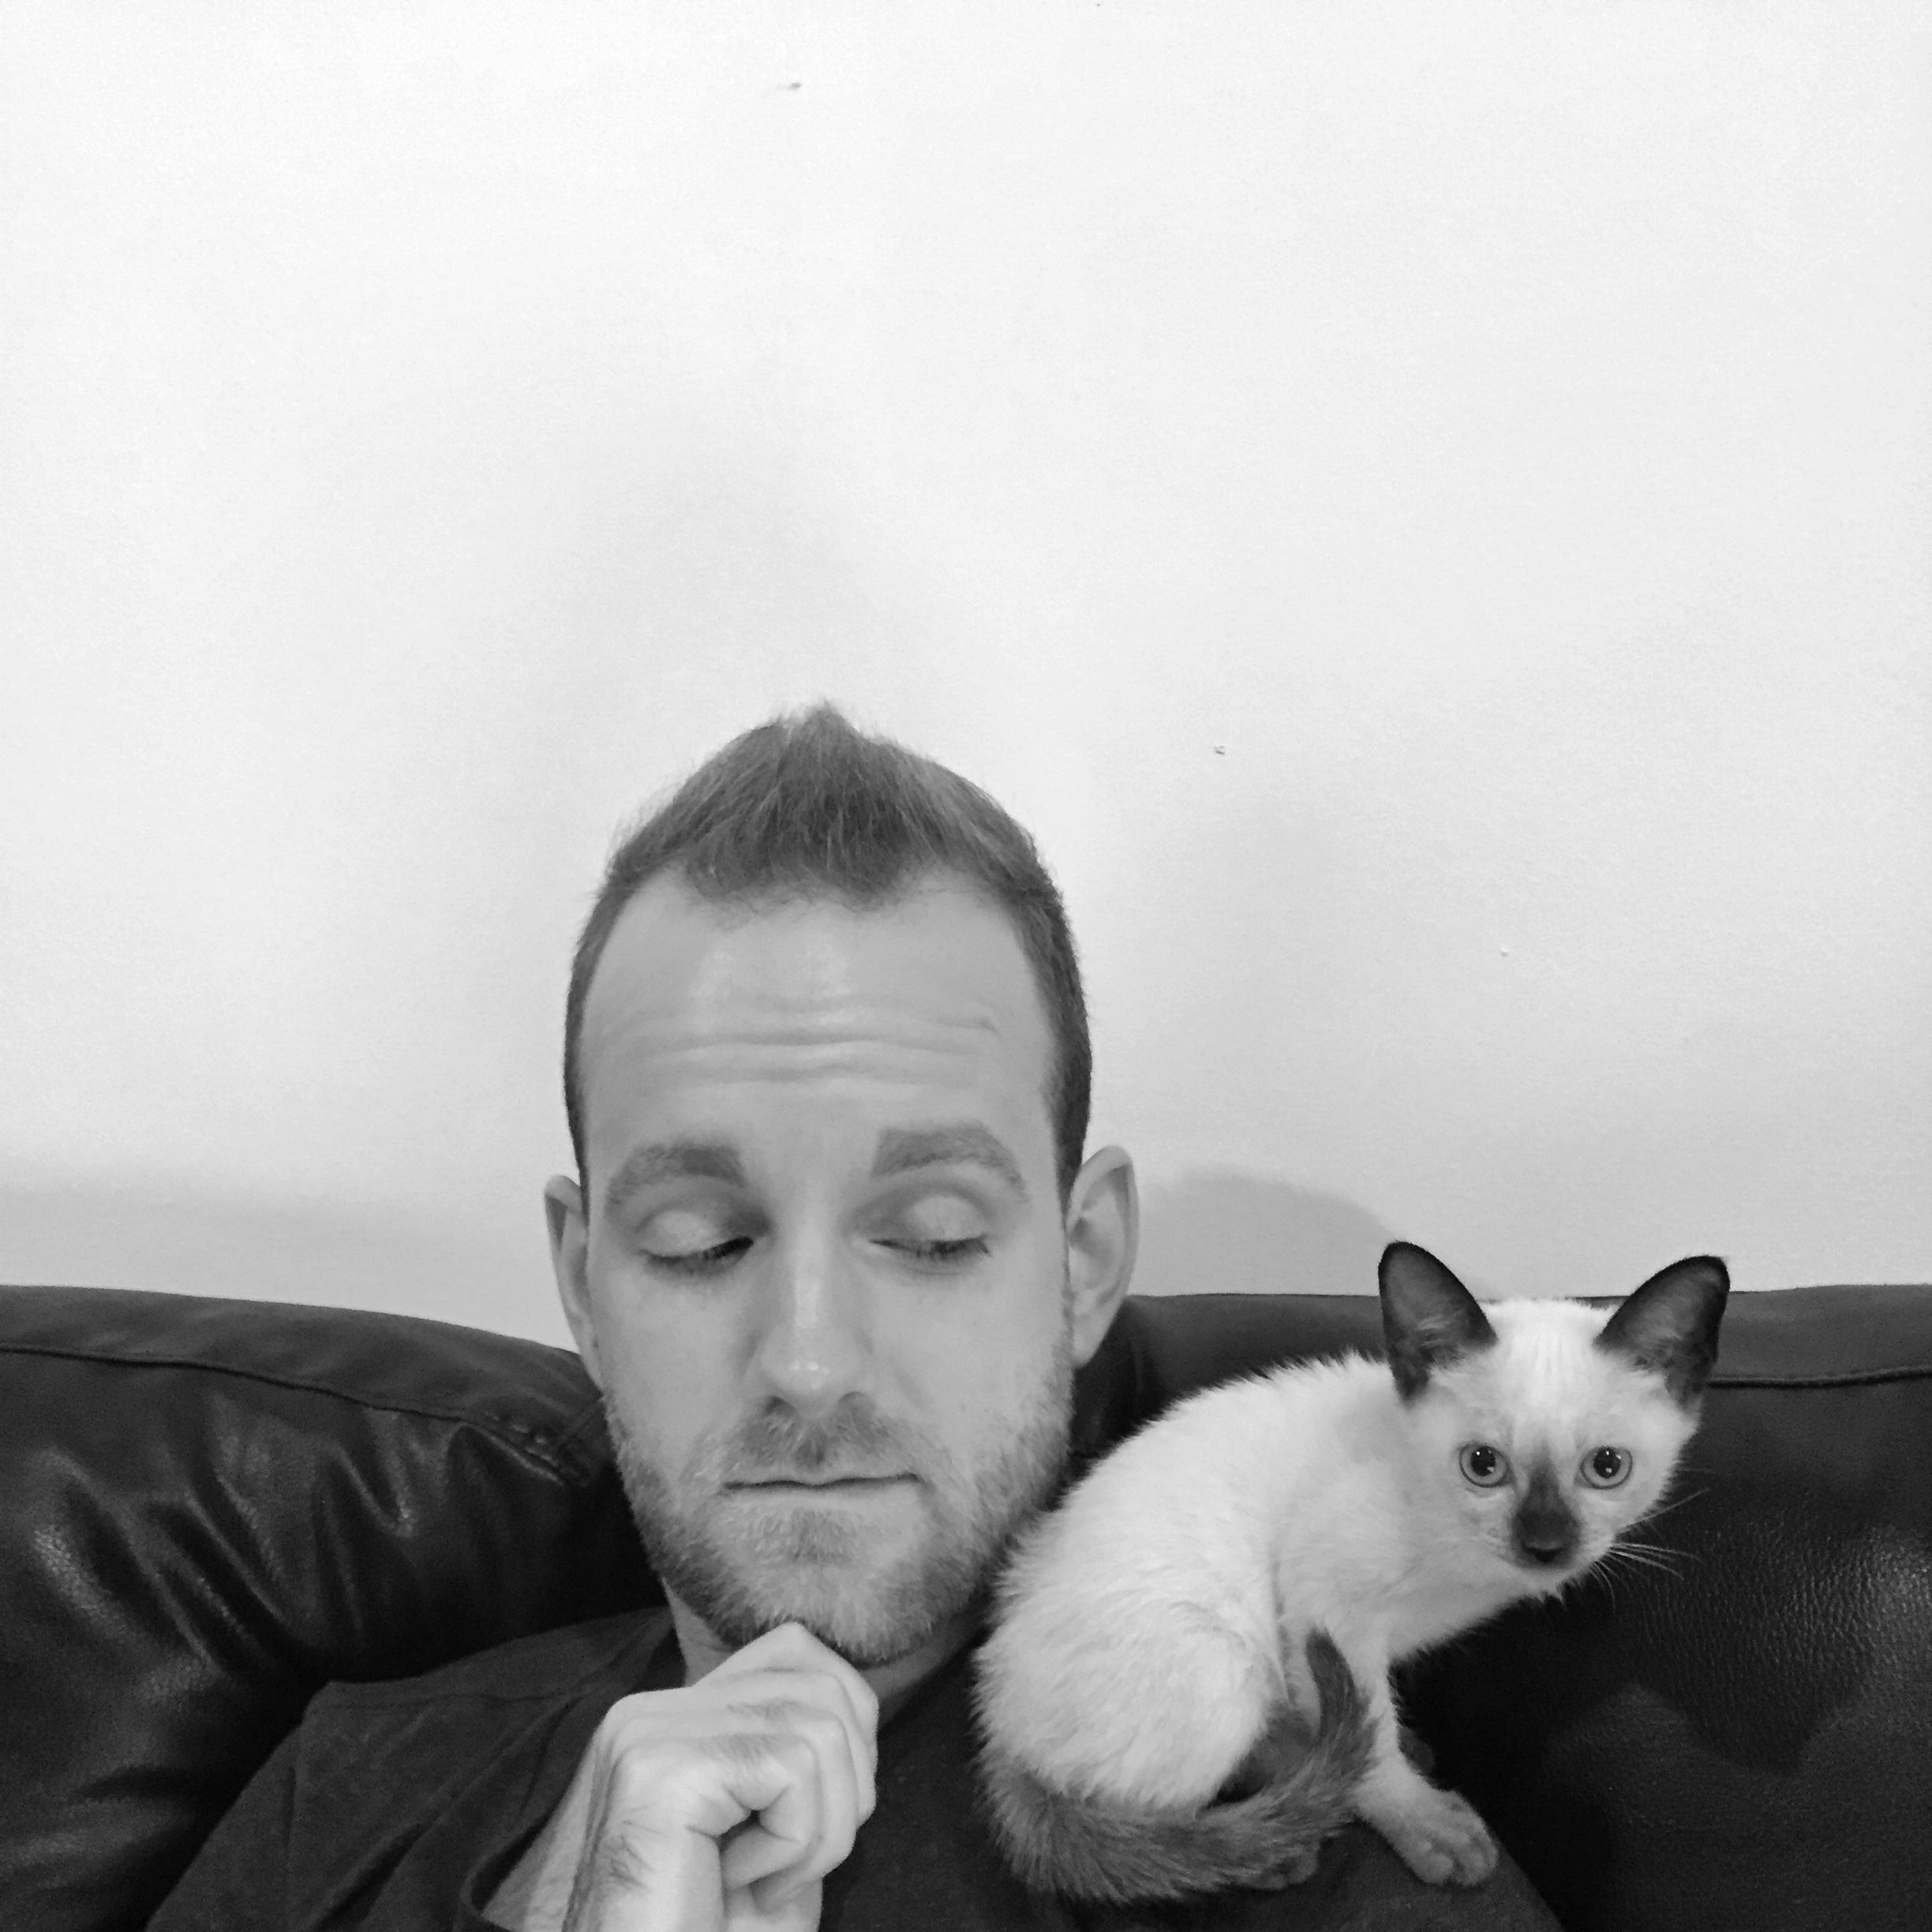 Robert Woodrich mit Siamkatze auf der Schulter